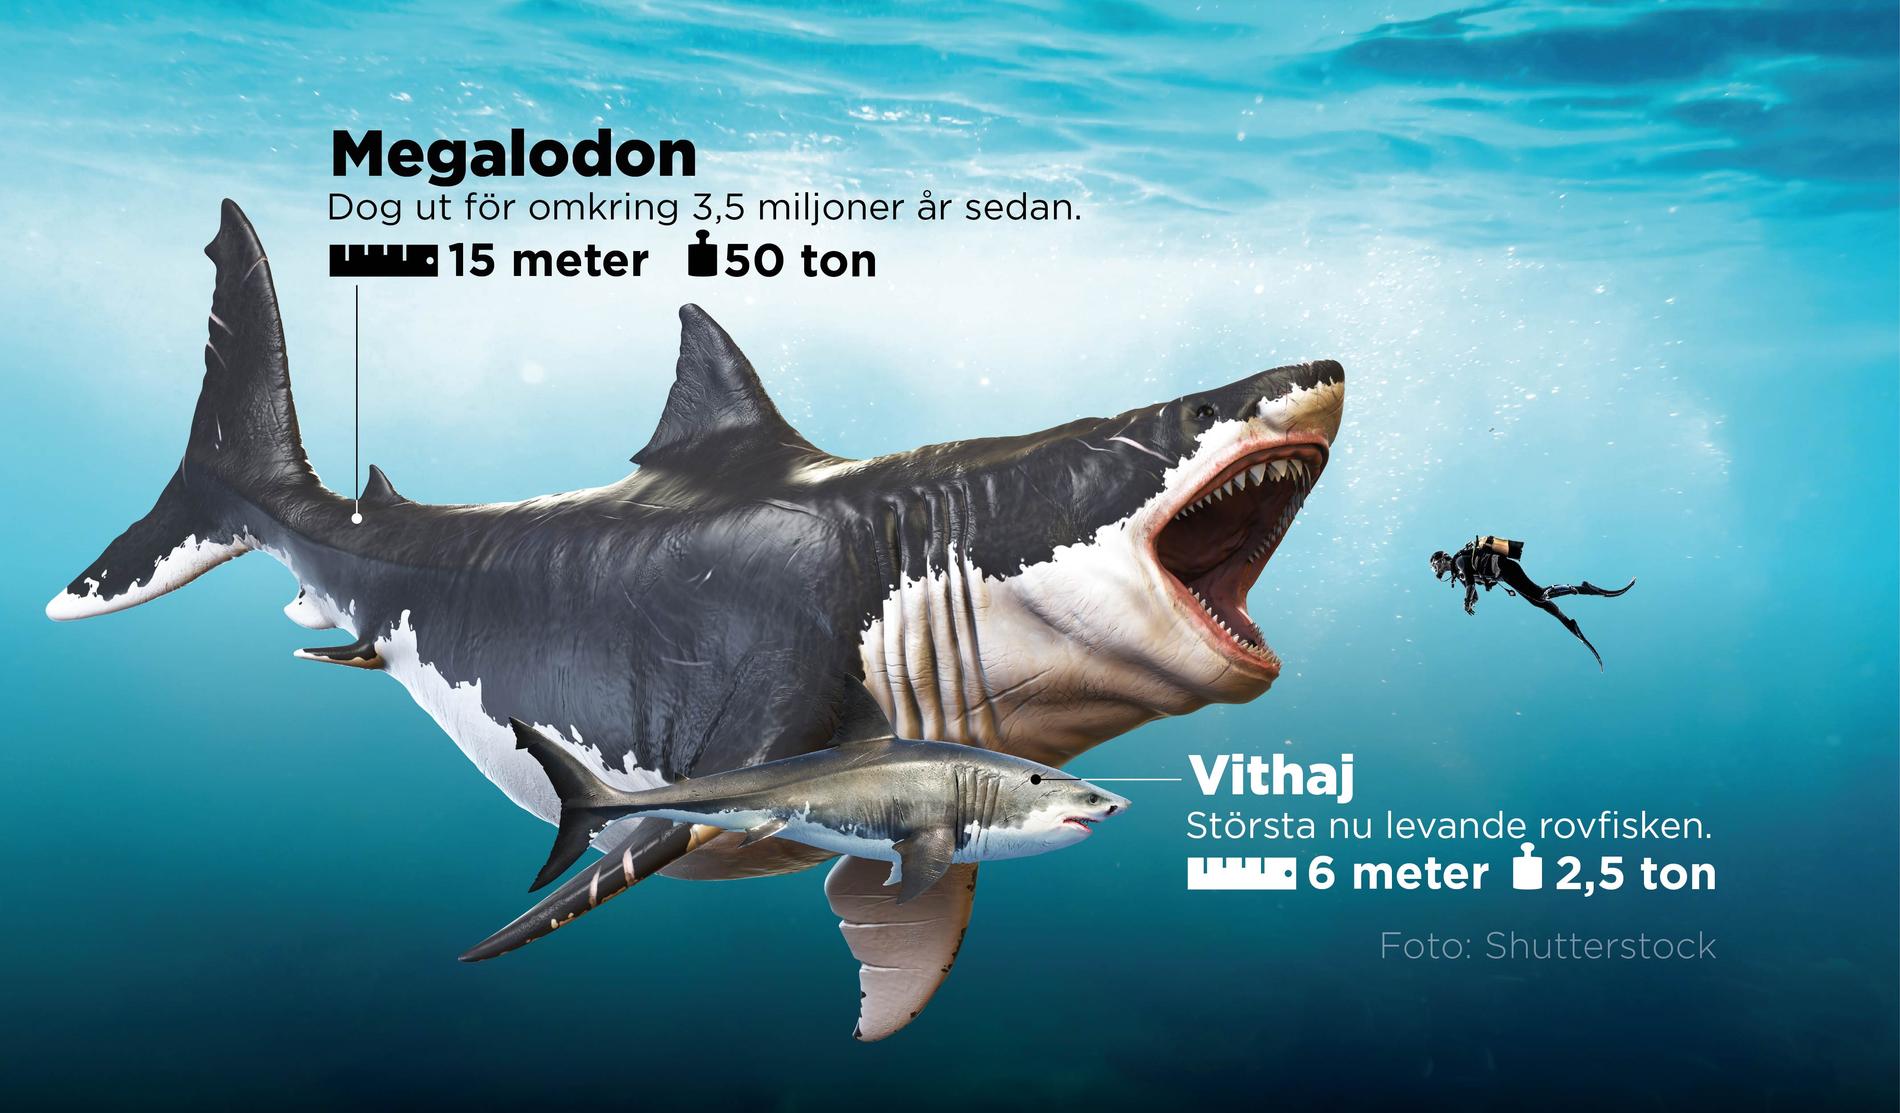 Megalodon tros vara den största fisk som levt på jorden.